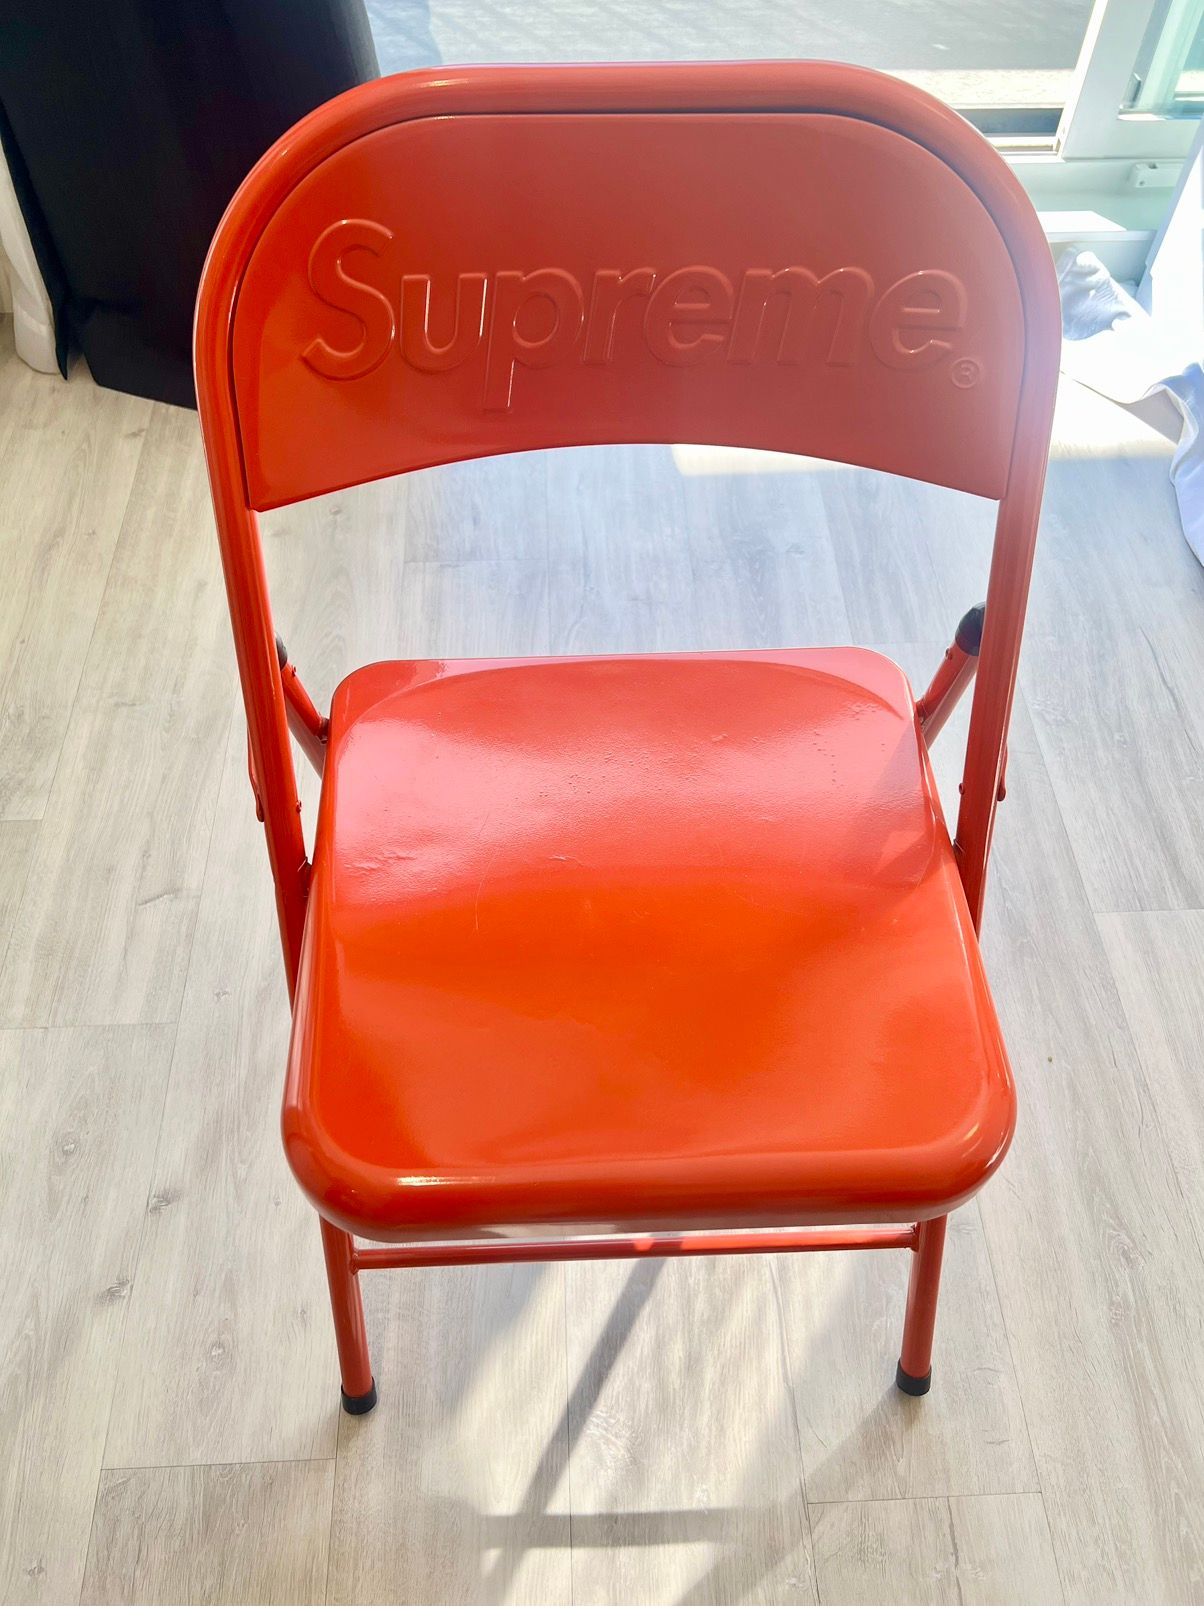 Supreme - Supreme Metal Folding Chair Redの+kihoku-lp.jp